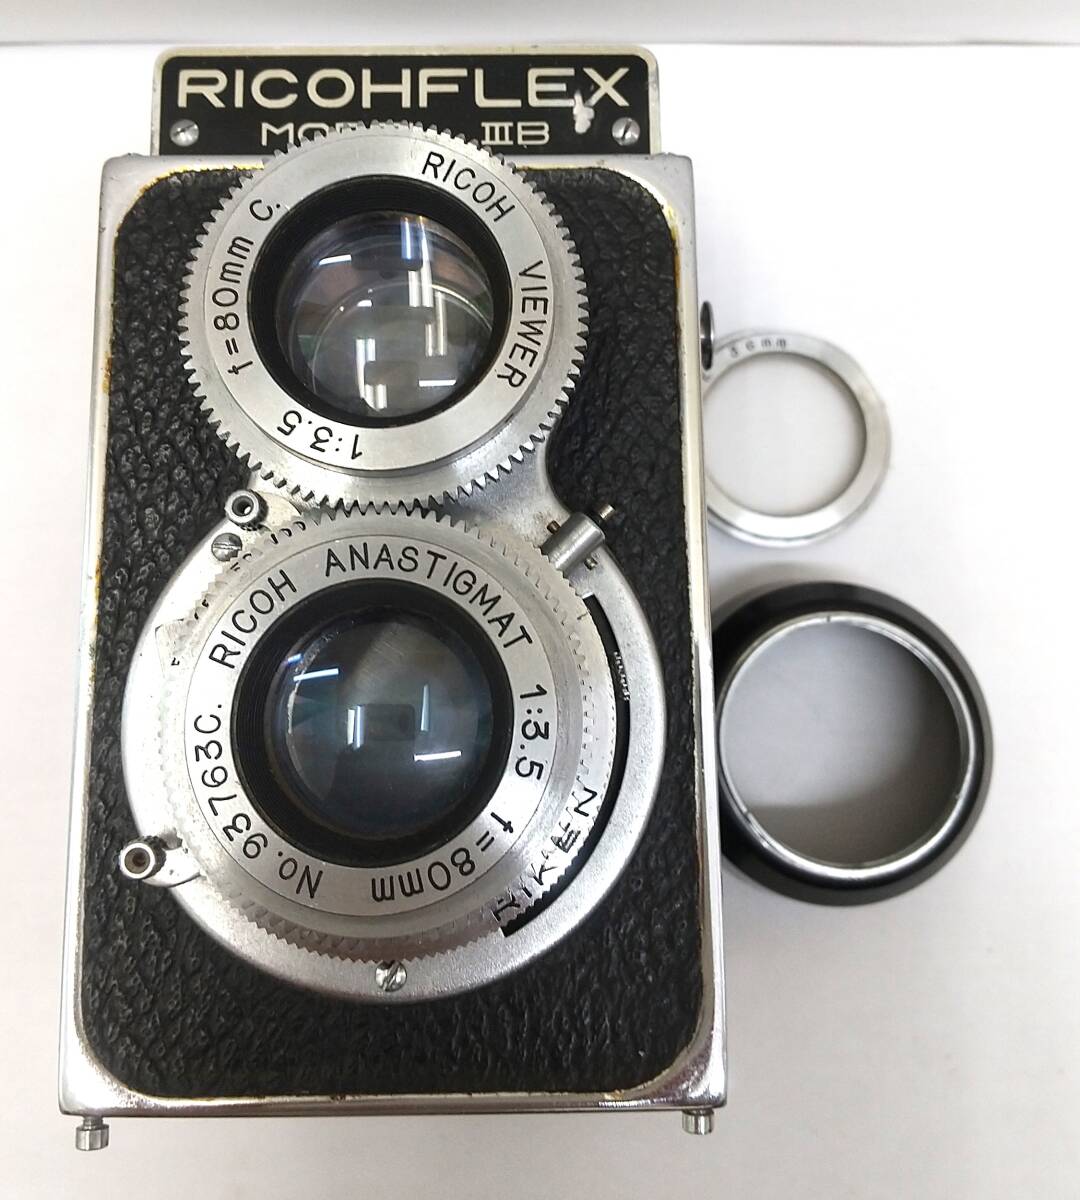 【837】RICOH FLEX MODELⅢB 二眼レフカメラ リコー モデル3B レトロ 希少 コレクション 趣味 おまけつきの画像1